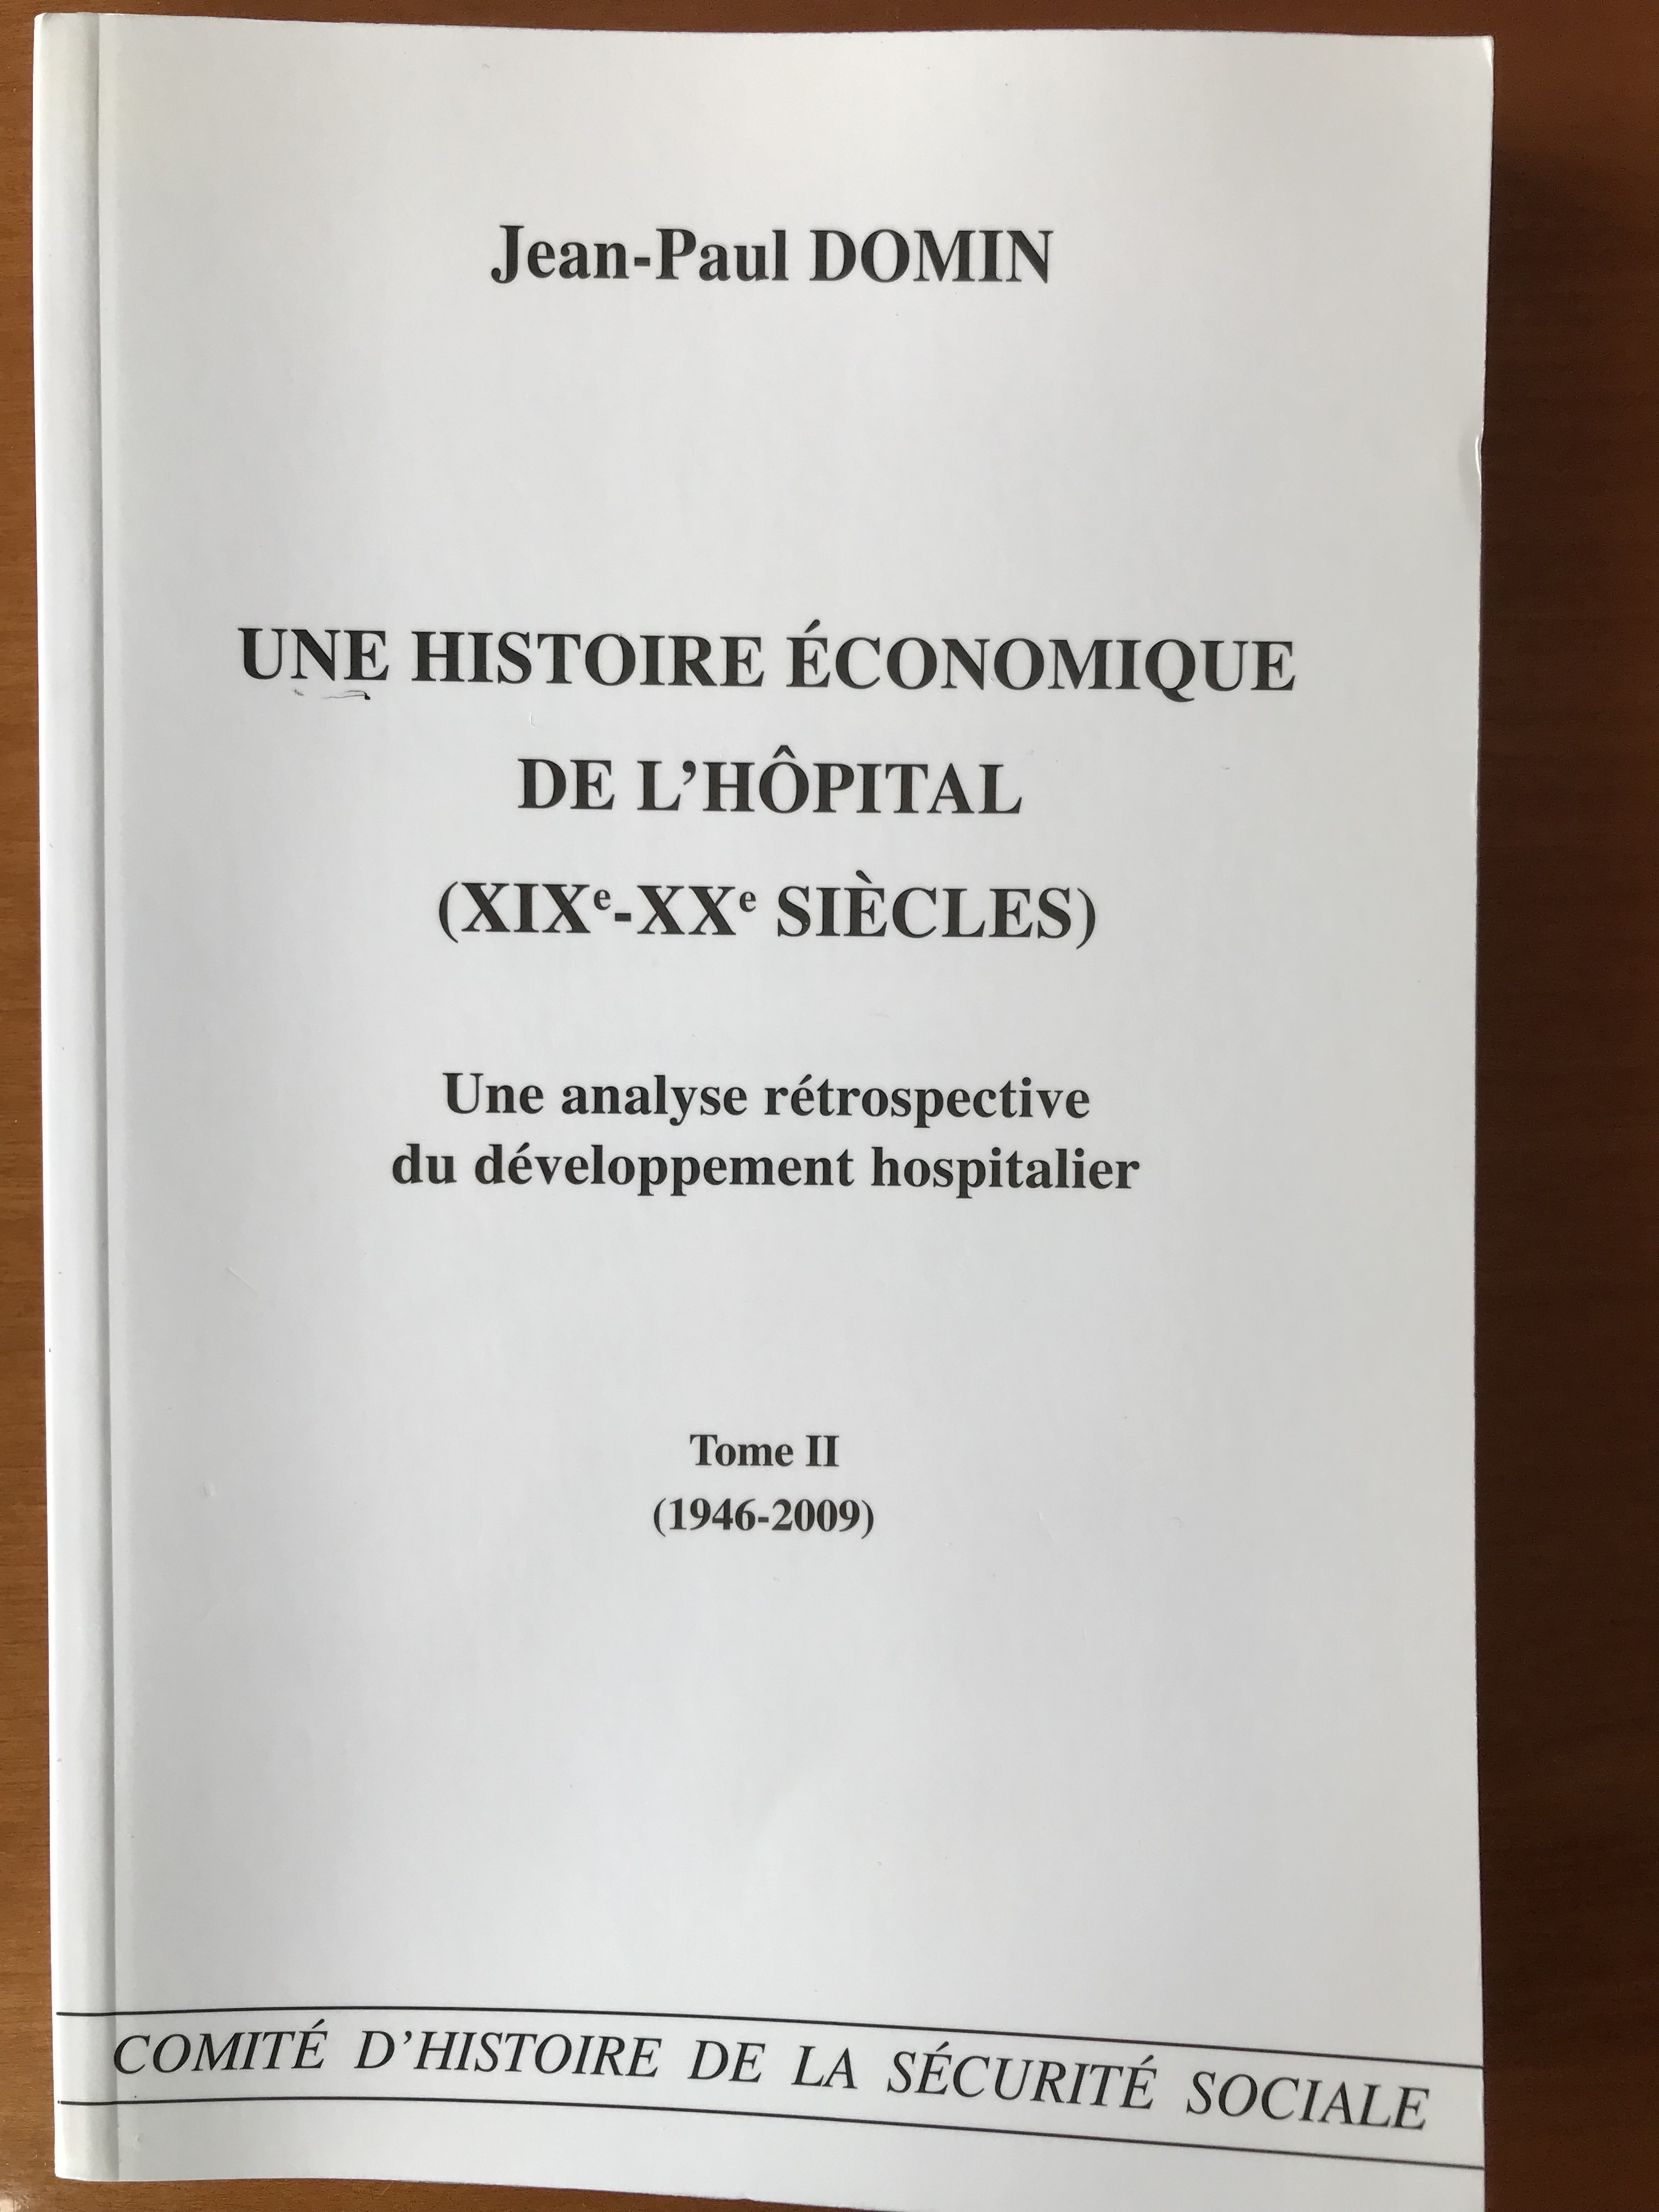 Une histoire économique de l’hôpital (XIXe – XXe siècles) – Une analyse rétrospective du développement hospitalier (Tome II – 1946-2009)